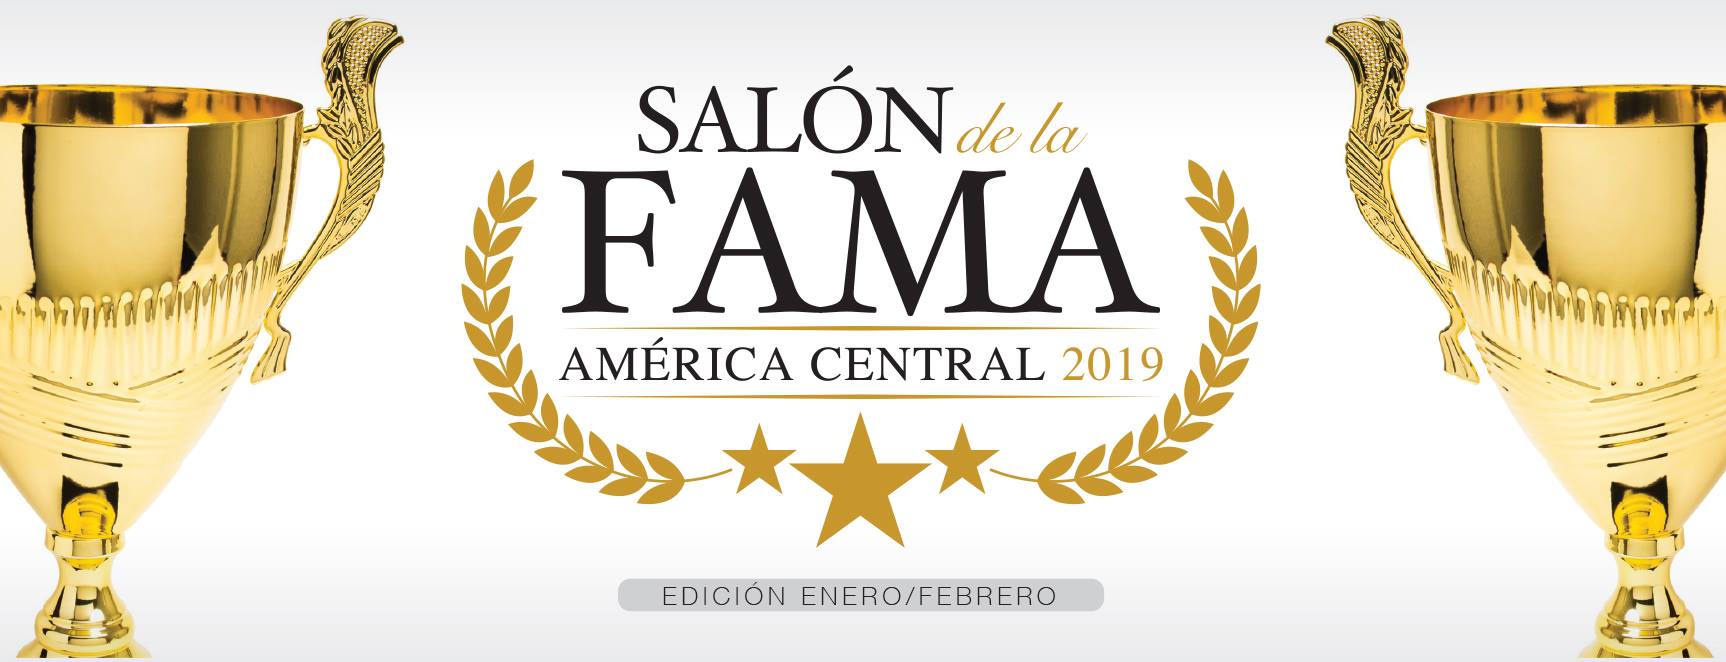 Salón de la fama de América Central 2019